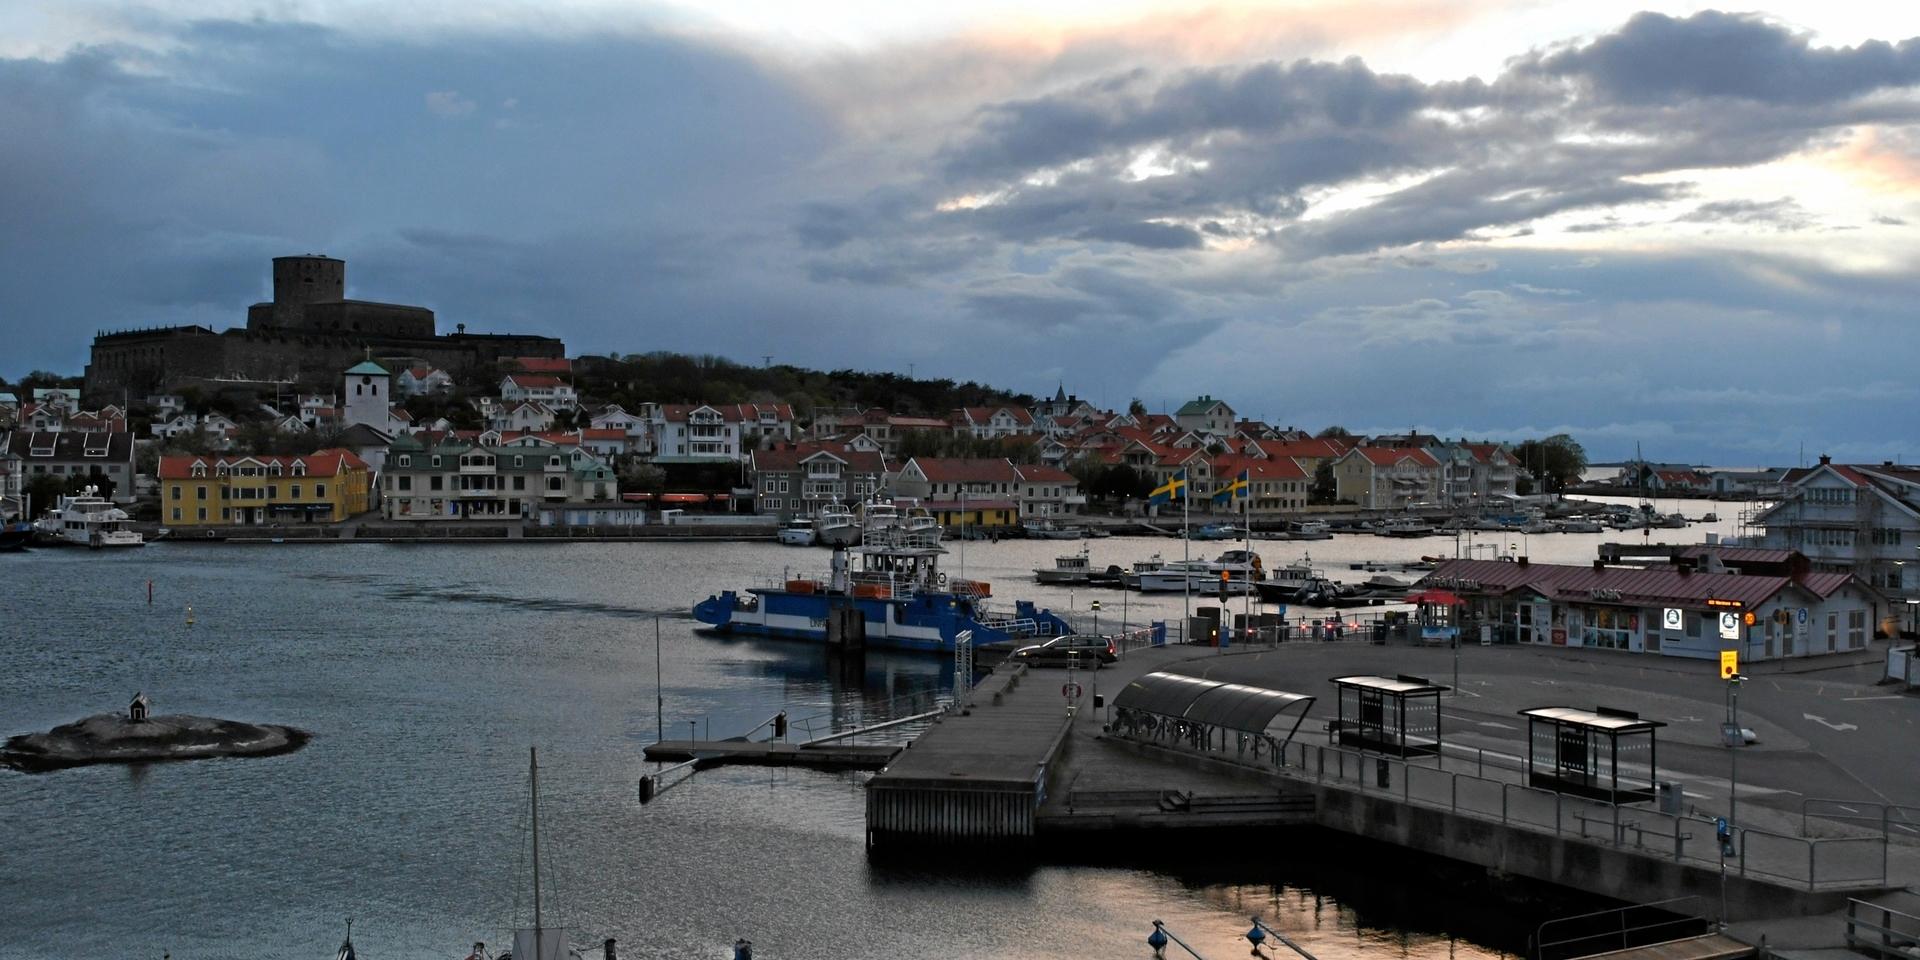 Villa Maritime i Marstrand har fått ett stort antal avbokningar på grund av osäkerheten kring coronaviruset. Arkivfoto: Charlotte Gad